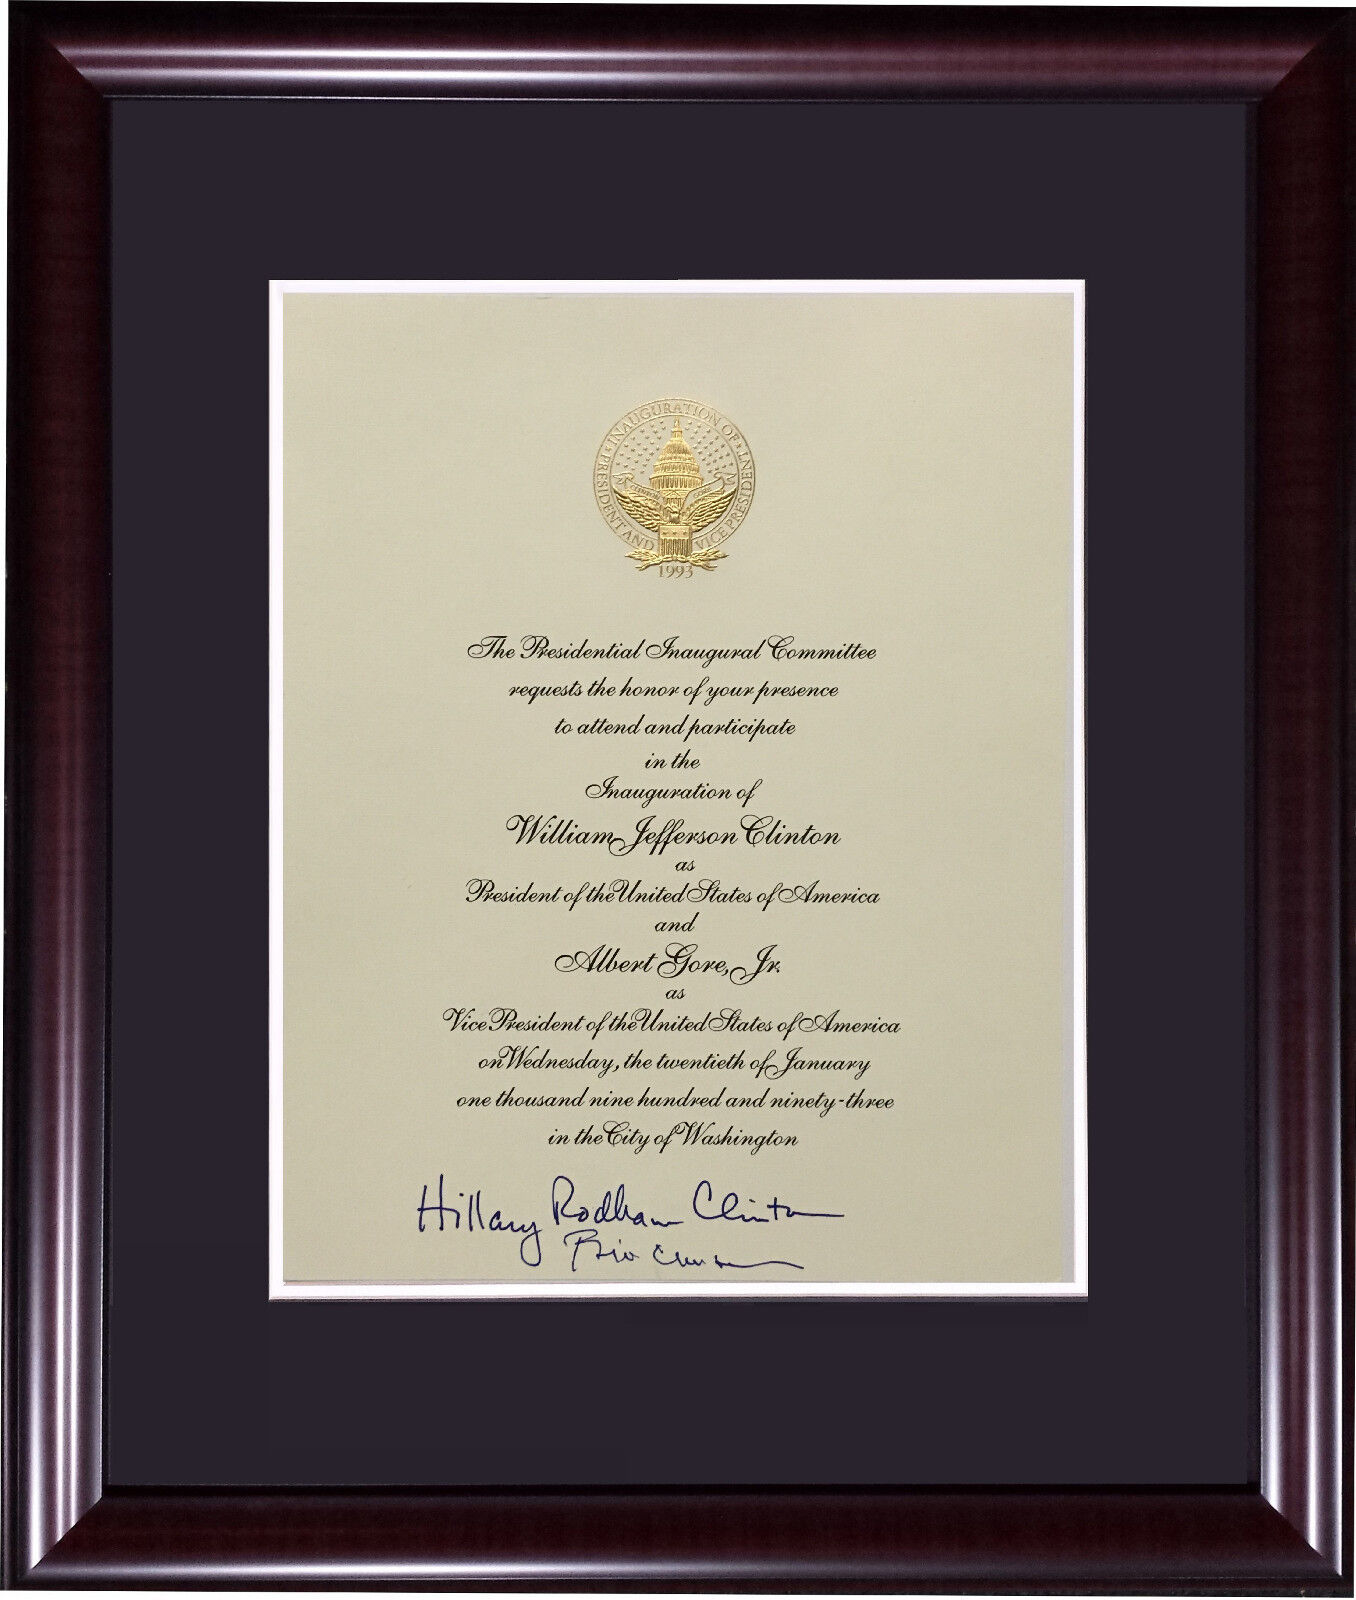 Hillary Bill Clinton signed 1993 President inauguration invitation auto psa coa